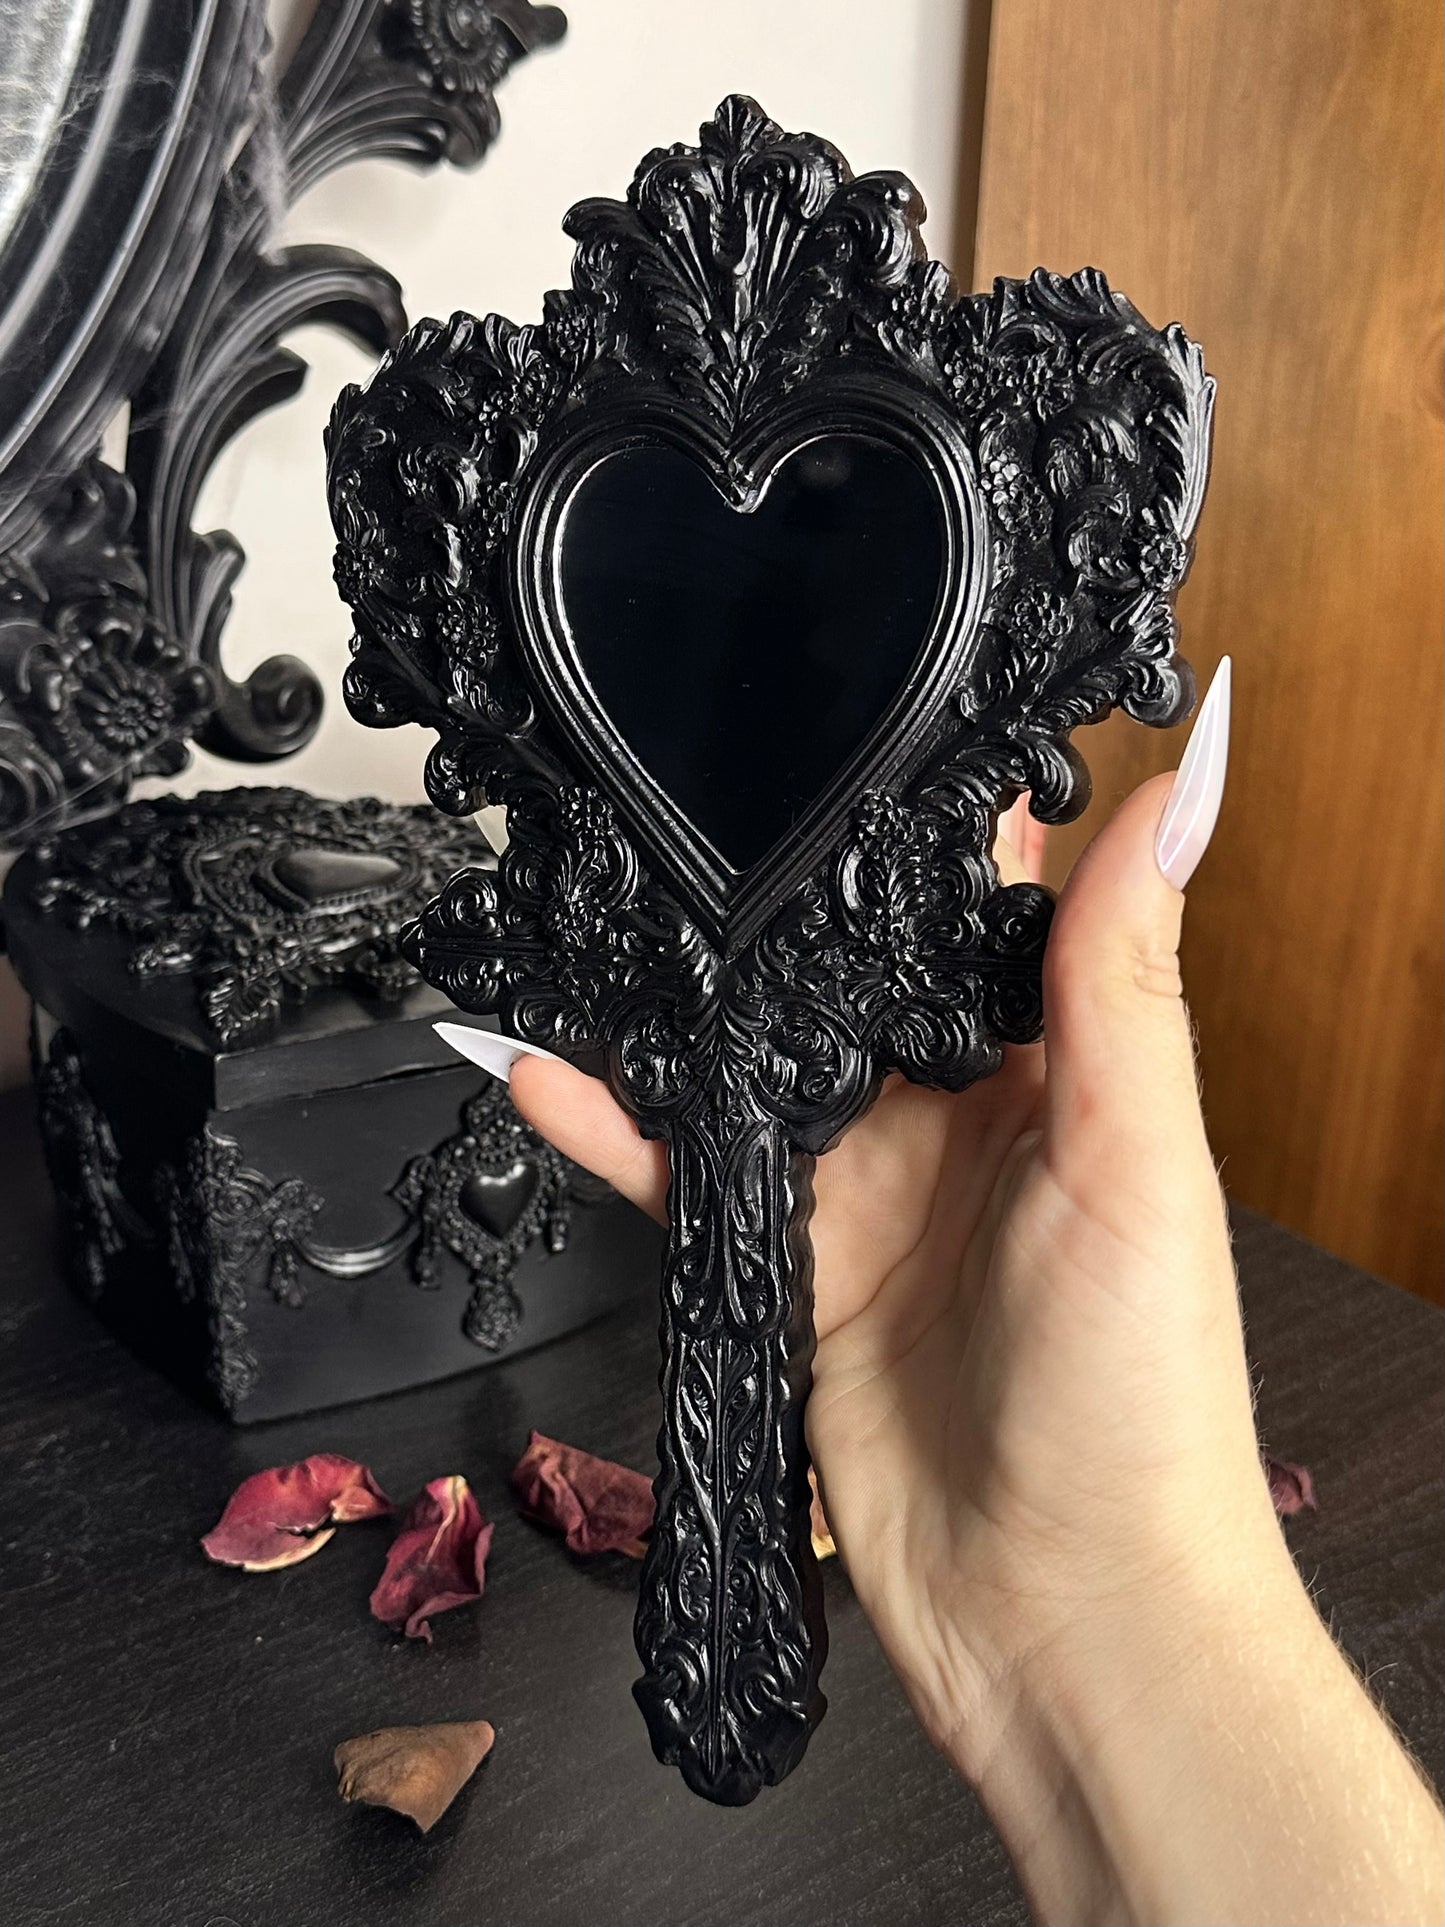 VANITY VALENTINE - Gothic hand mirror